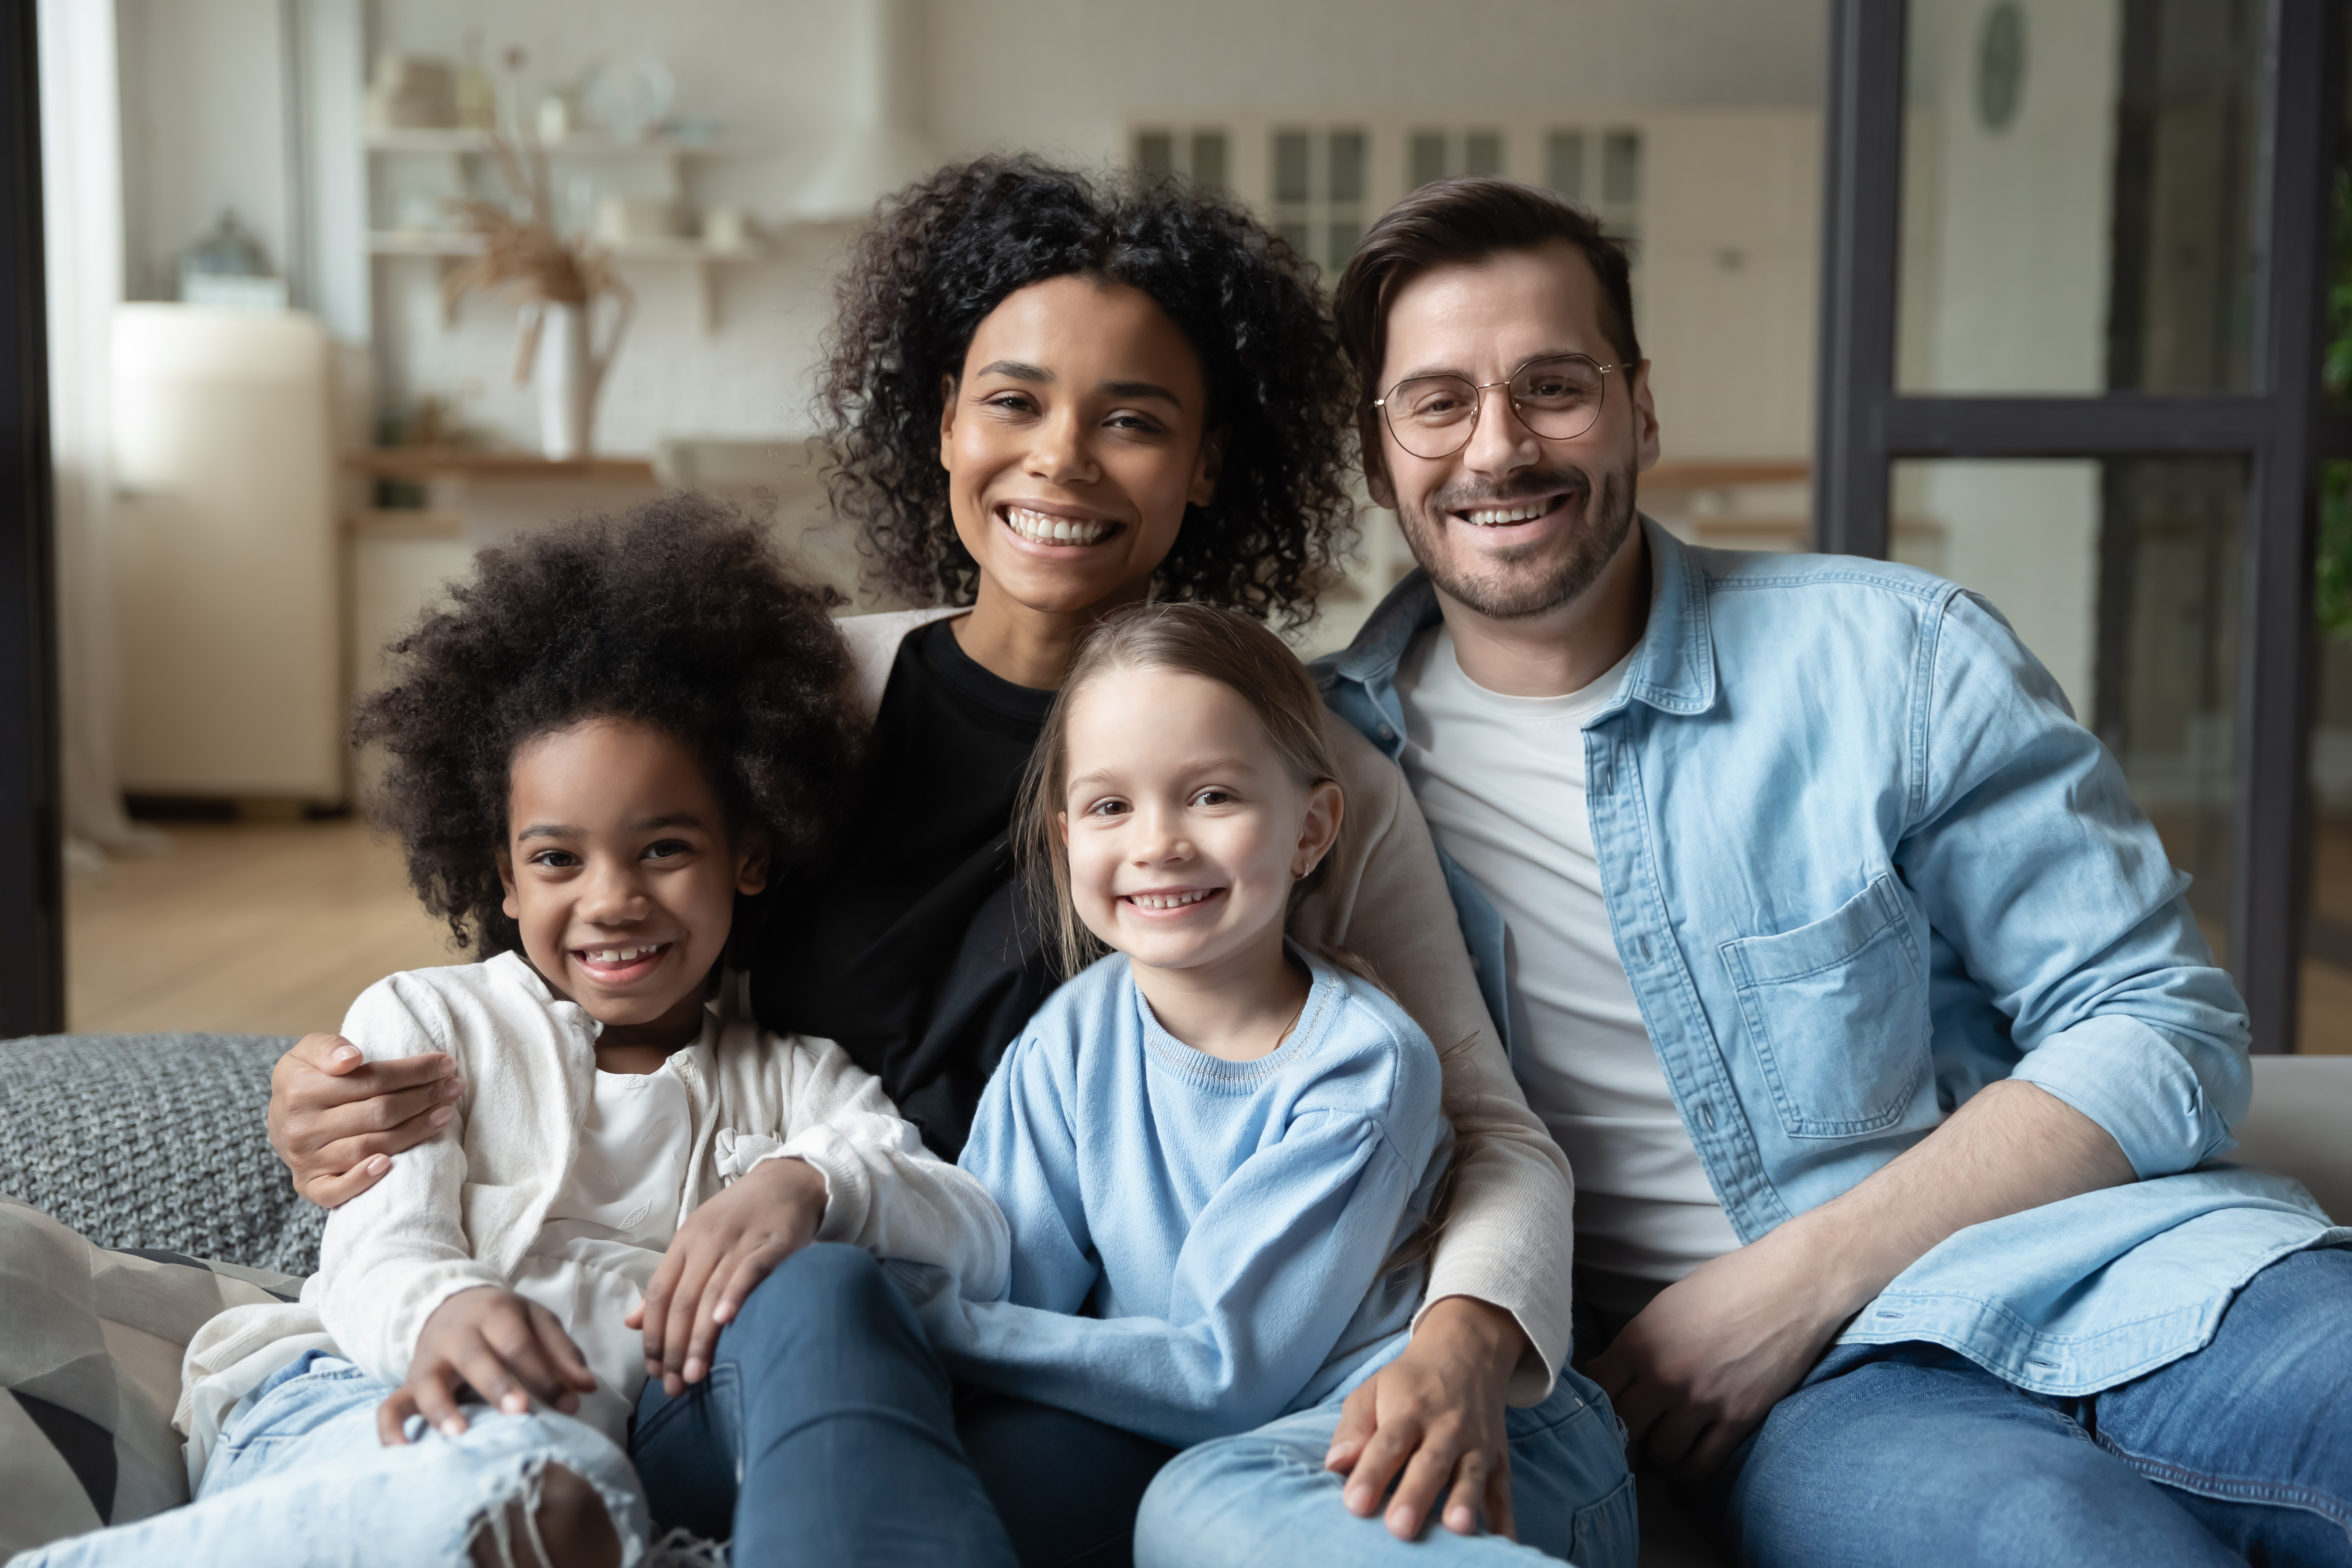 Une famille multiraciale composée d'une mère noire, d'enfants métisses, et d'un père blanc | Source : Shutterstock